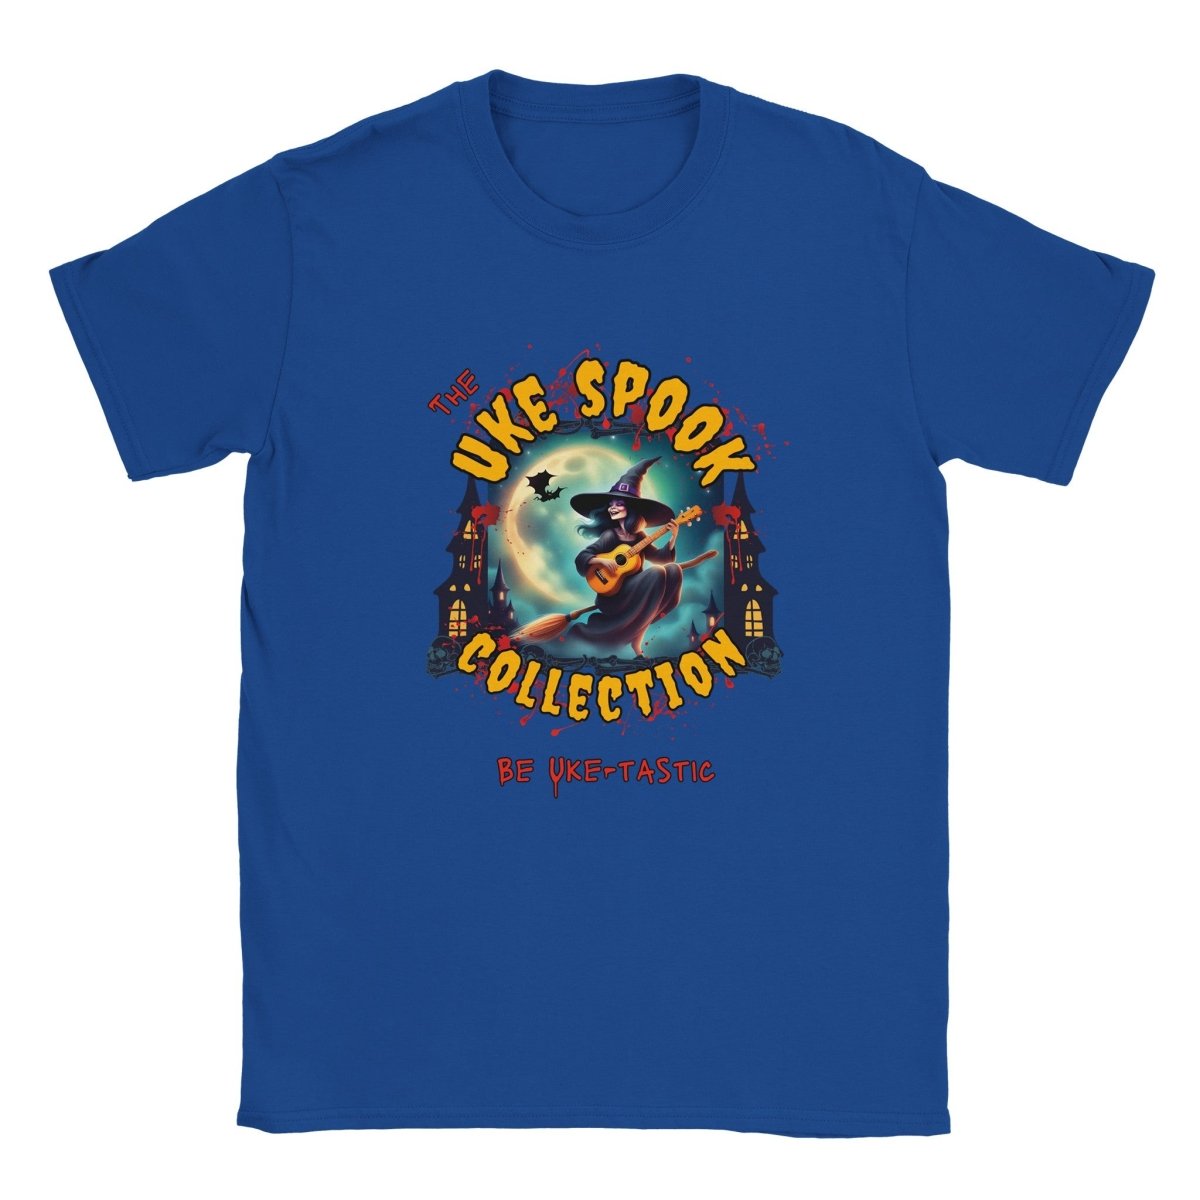 Uke Spook Witch - Classic Unisex Crewneck T-shirt - Uke Tastic - Royal - The Uke Spook Collection - Uke Tastic